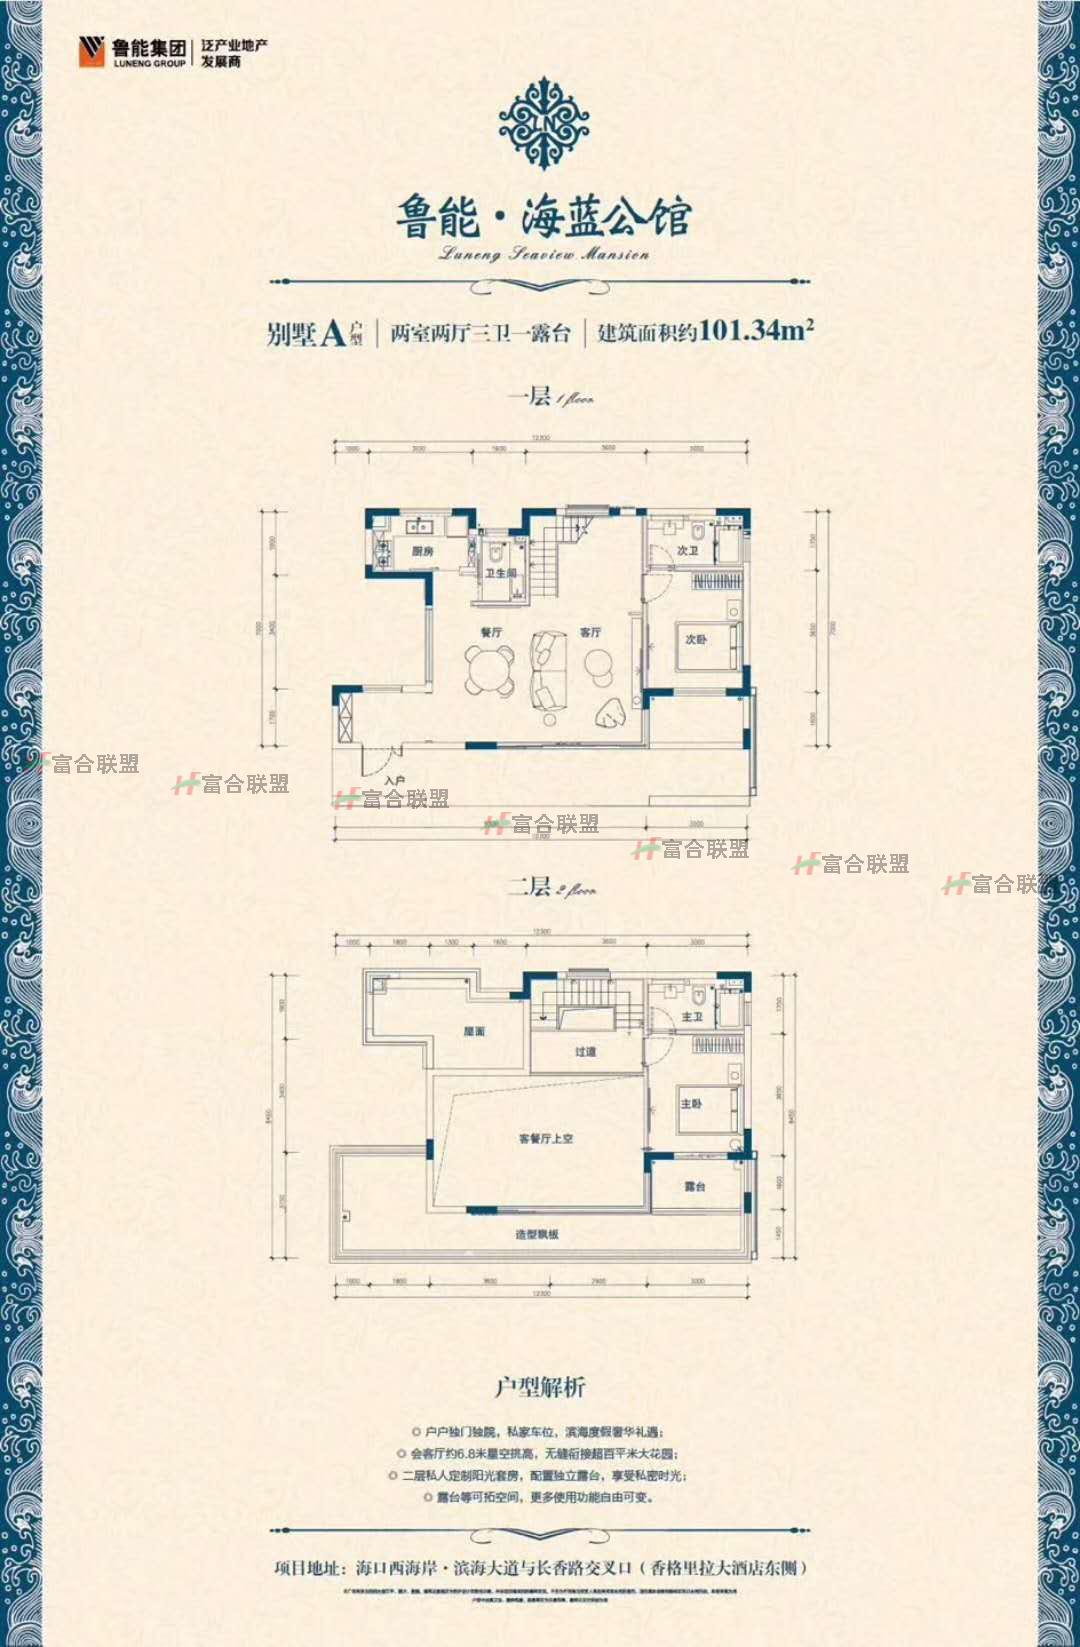 鲁能·海蓝公馆 户型图1.jpg 